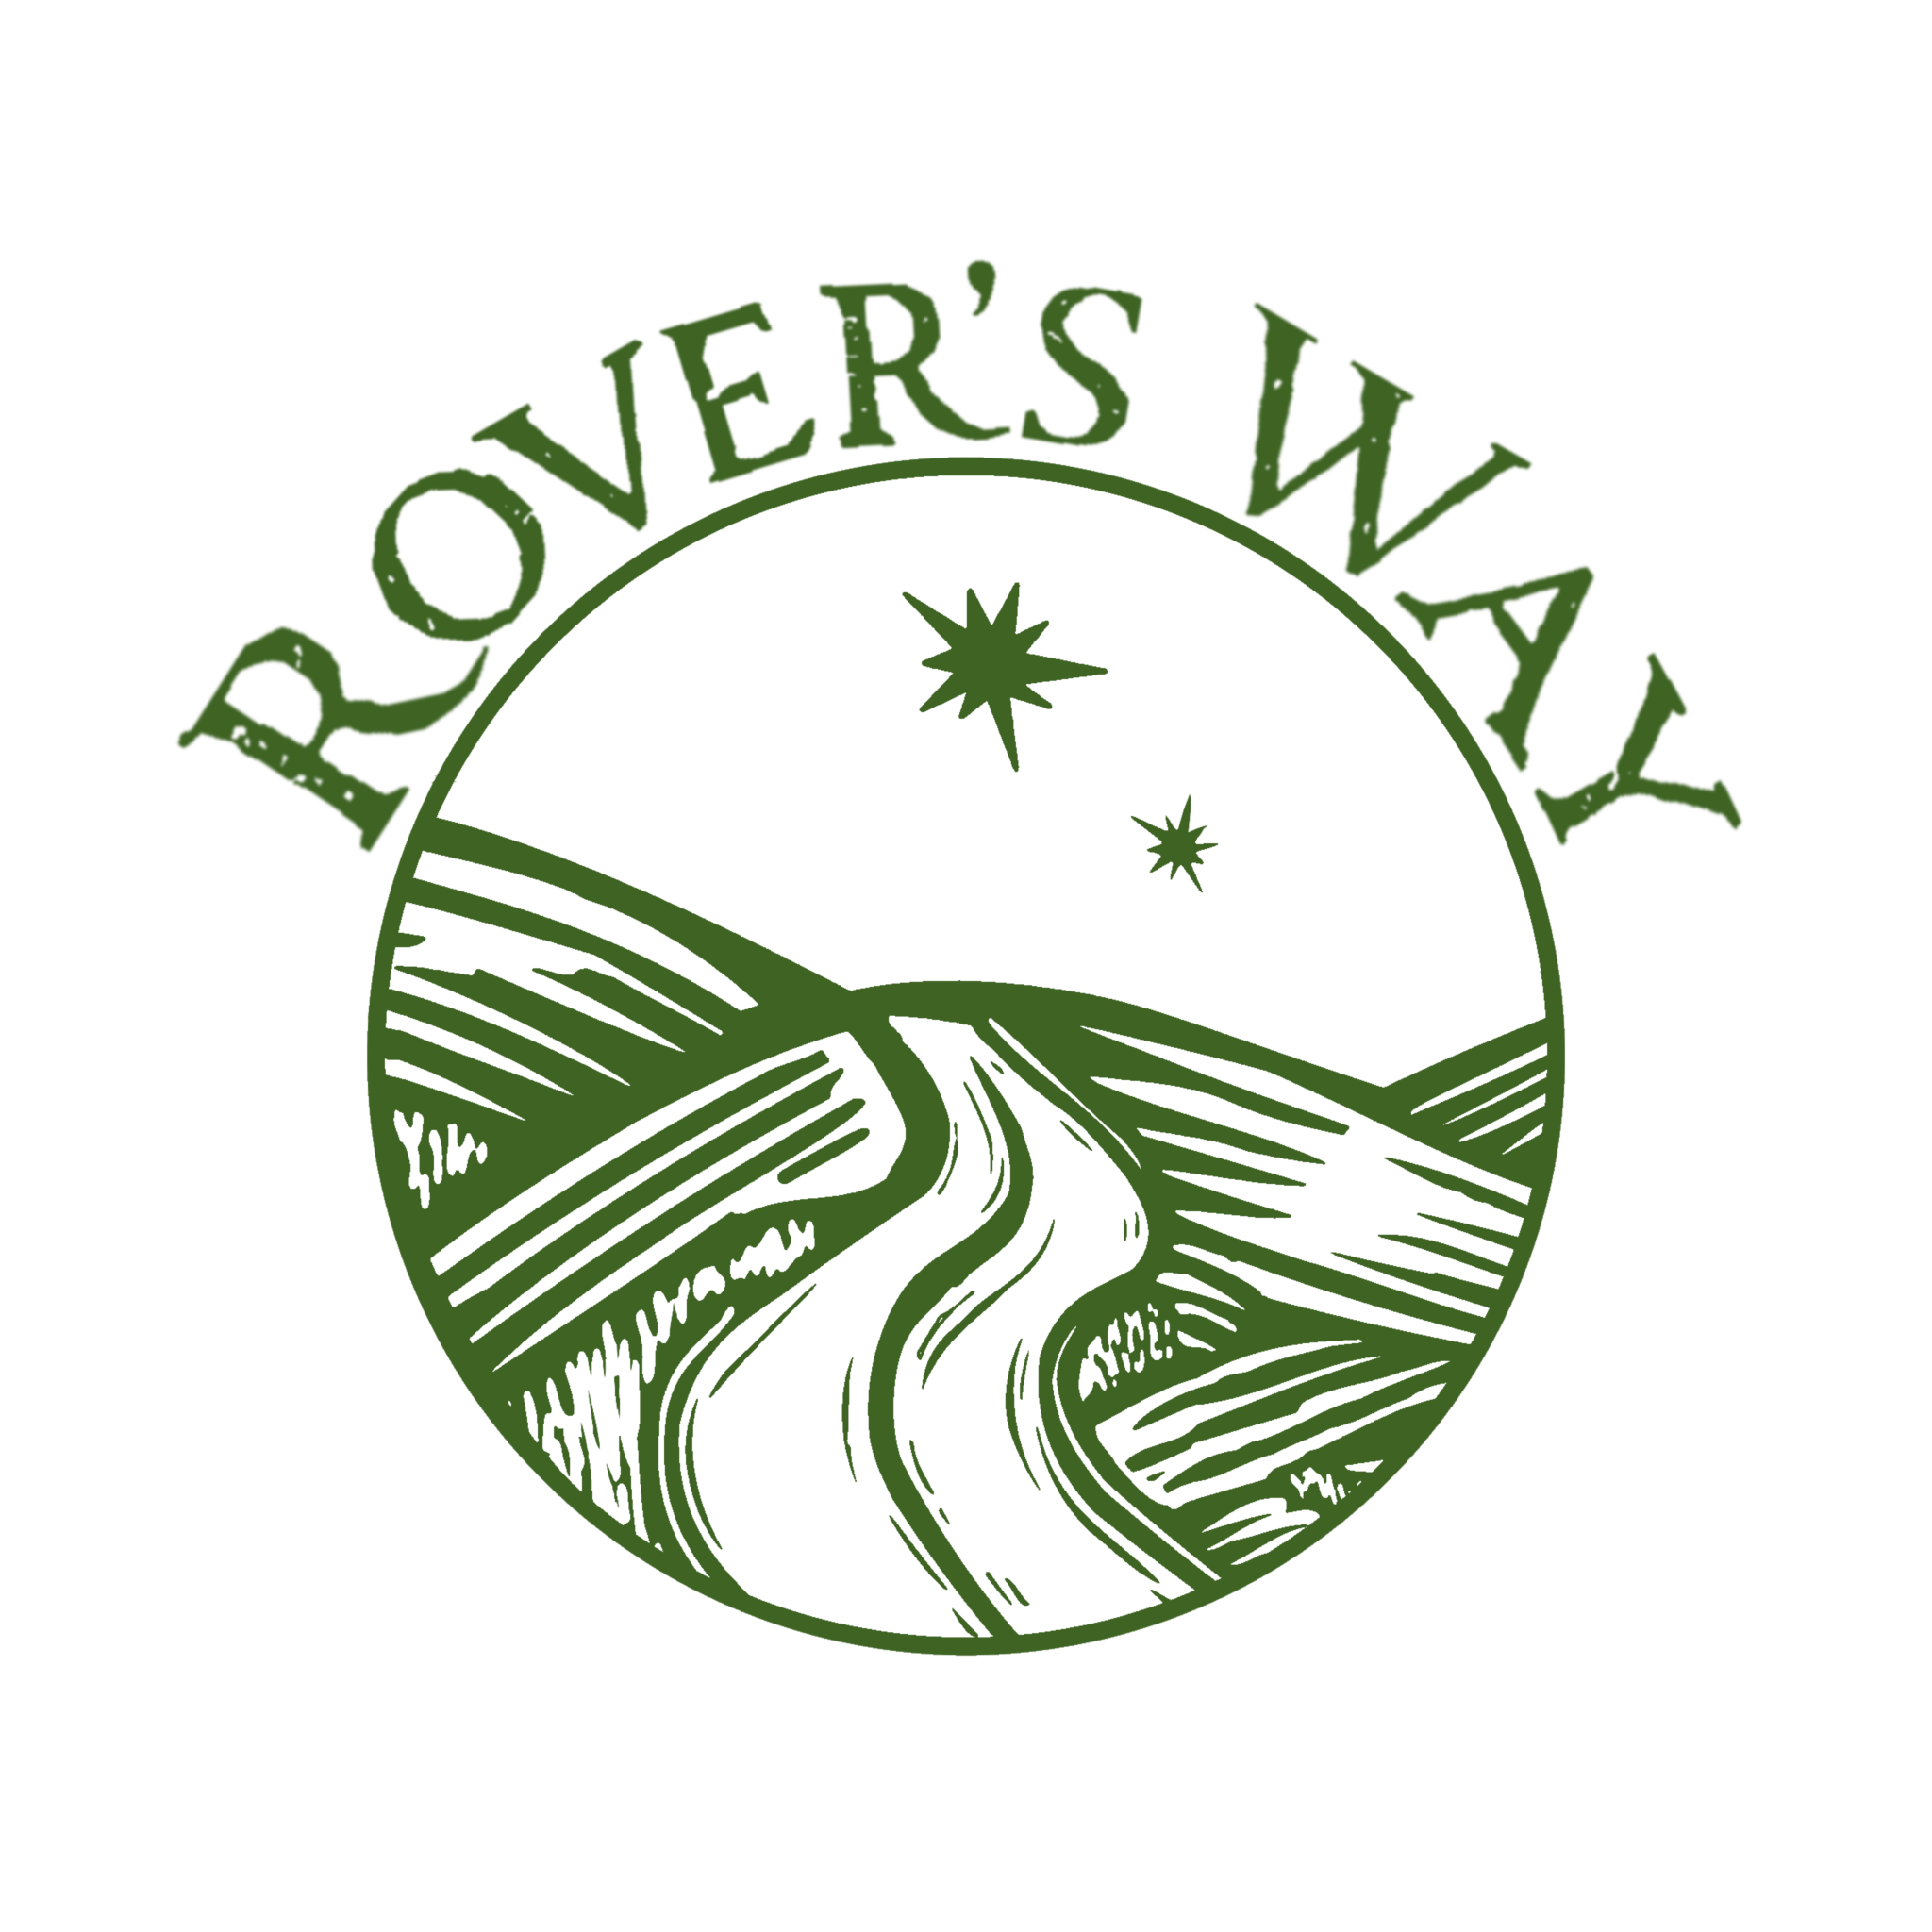 Rover's Way